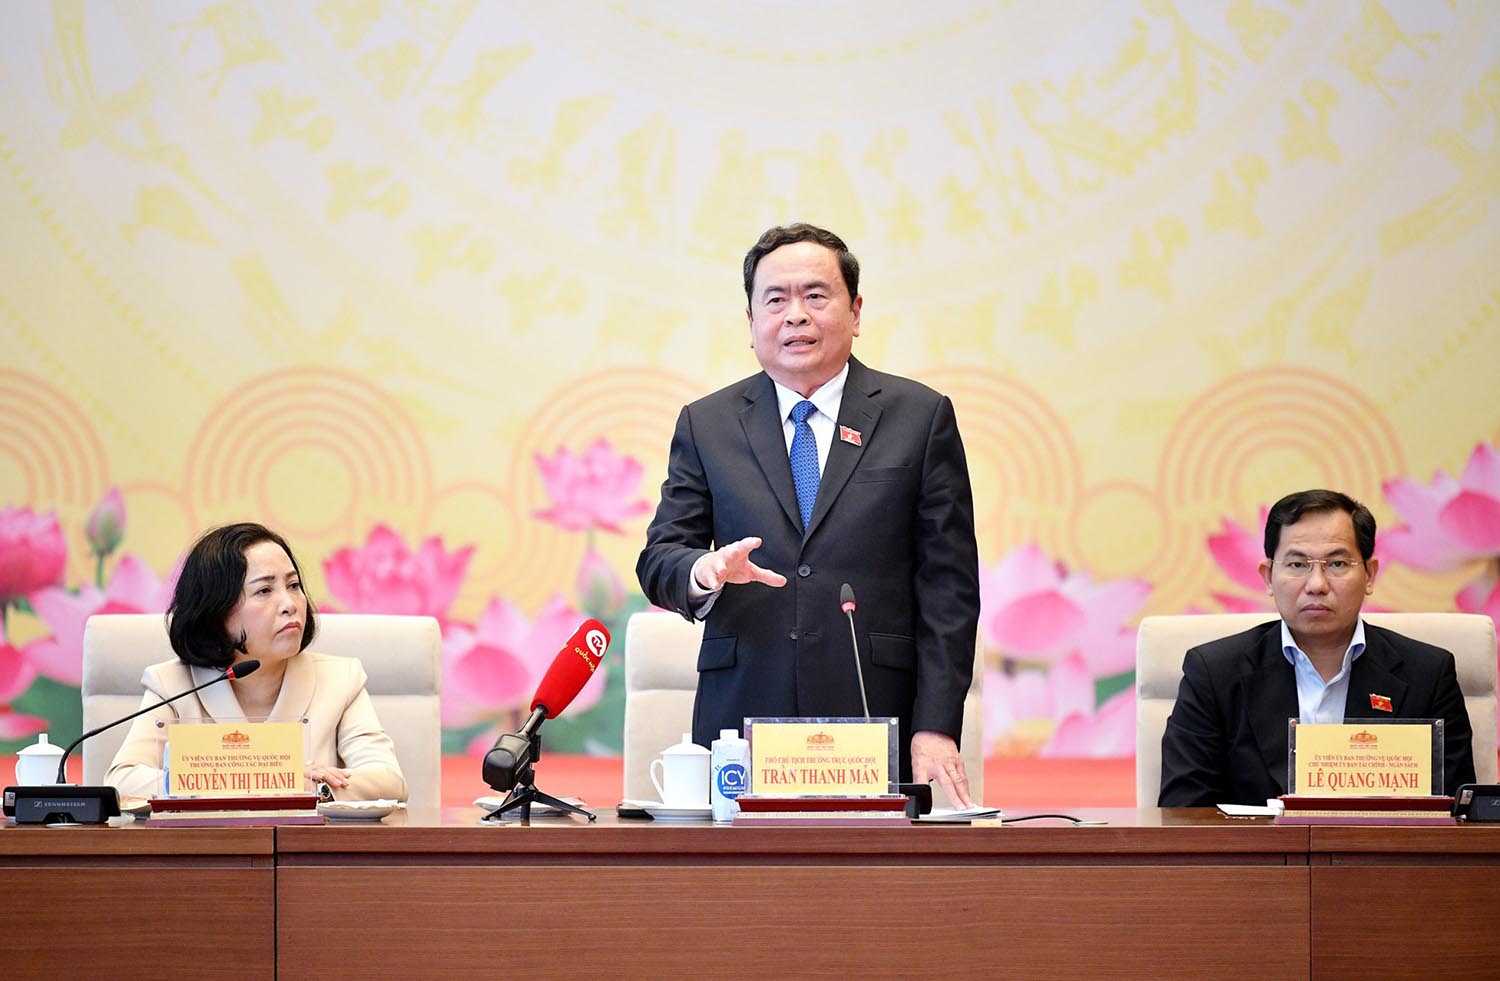 Phó Chủ tịch Thường trực Quốc hội Trần Thanh Mẫn phát biểu tại cuộc gặp mặt. Ảnh: Trọng Quỳnh